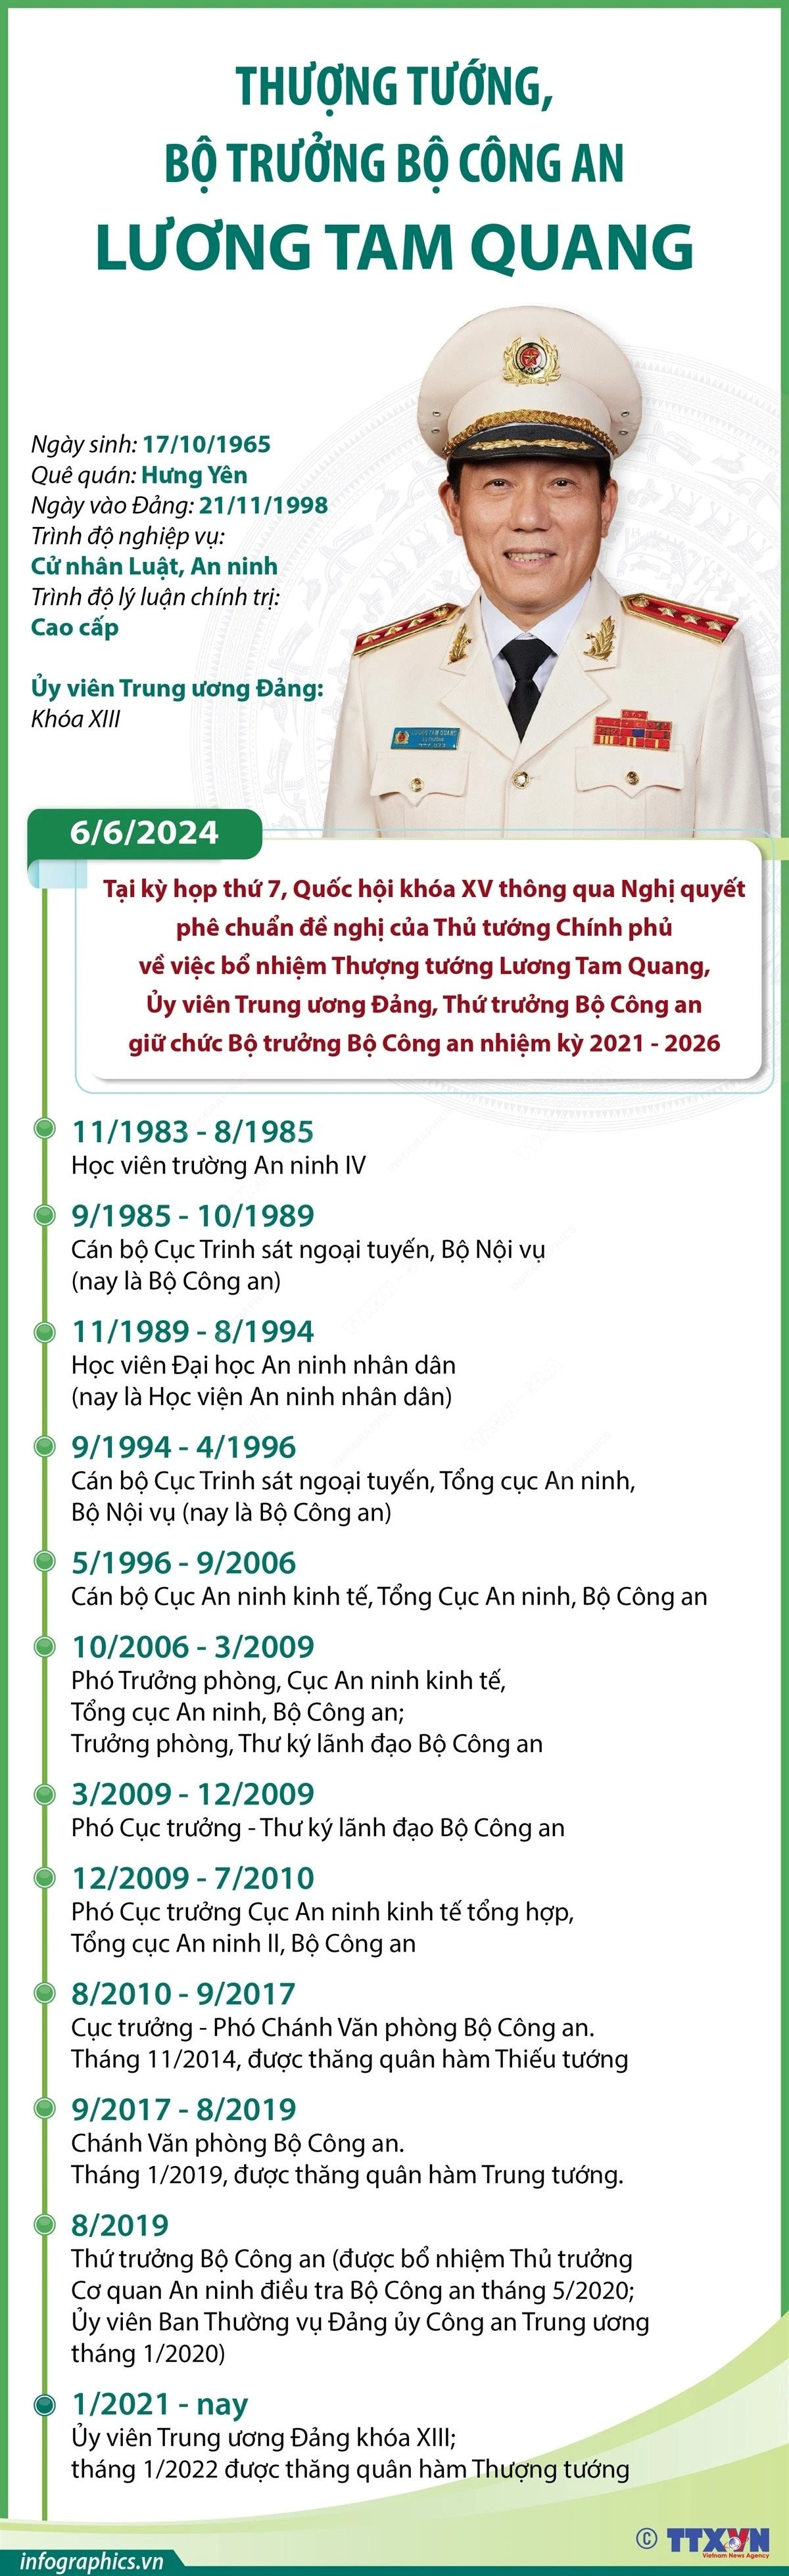 info-luong-tam-quang-539.jpg.jpg